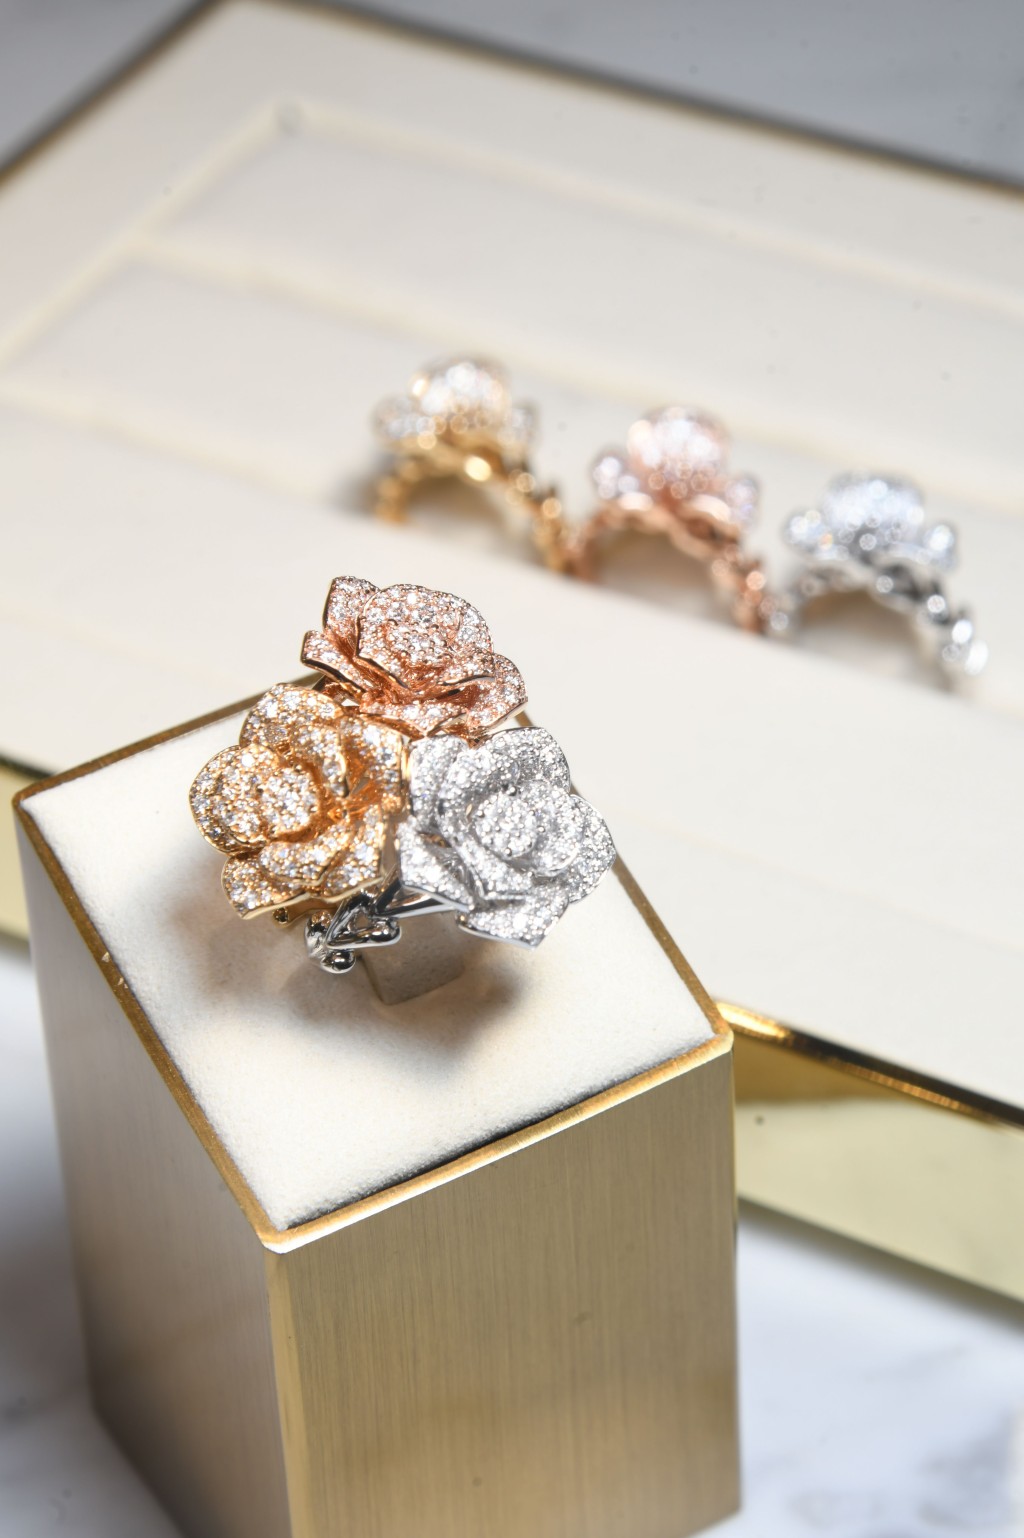 品牌的设计着重多变的戴法，如这枚立体花朵钻石指环，可单独或叠戴成花束的效果。